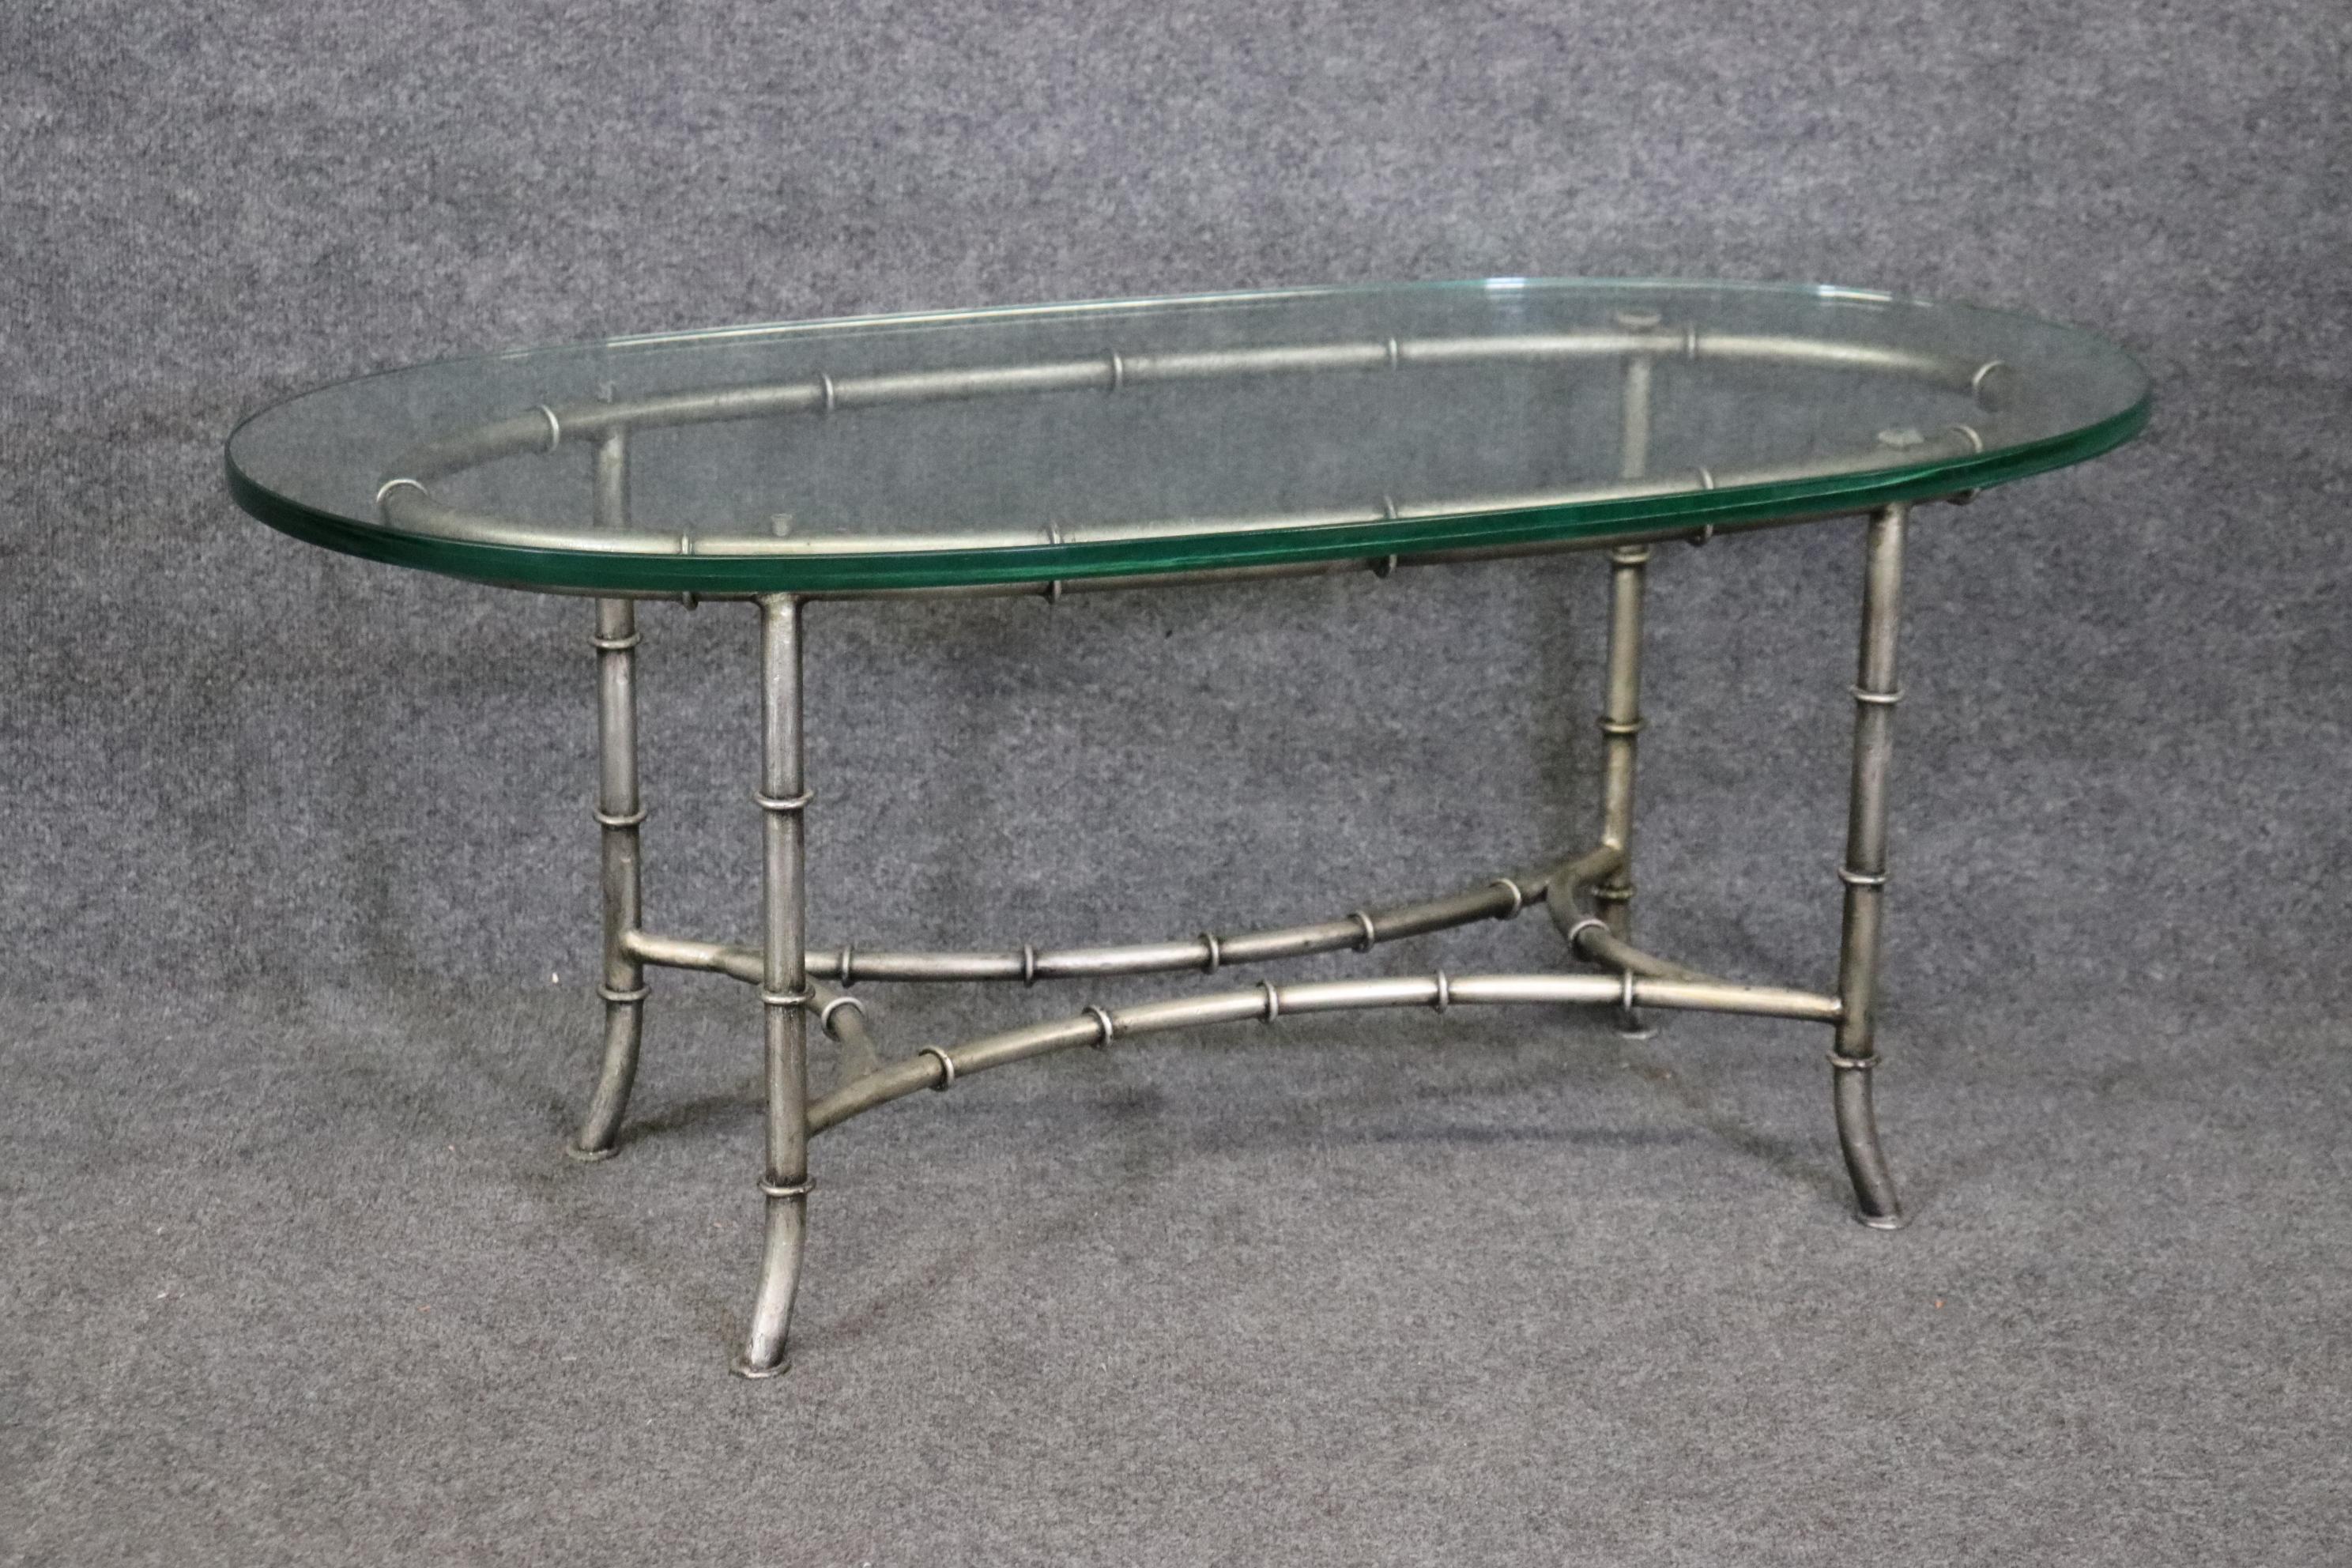 Ésta es una preciosa mesa de centro del estilo de la empresa francesa Maison Bagues, que fabricó unas preciosas mesas de centro de bambú sintético como ésta. El acabado parece ser plateado, aunque no estoy seguro. La mesa está en buen estado y